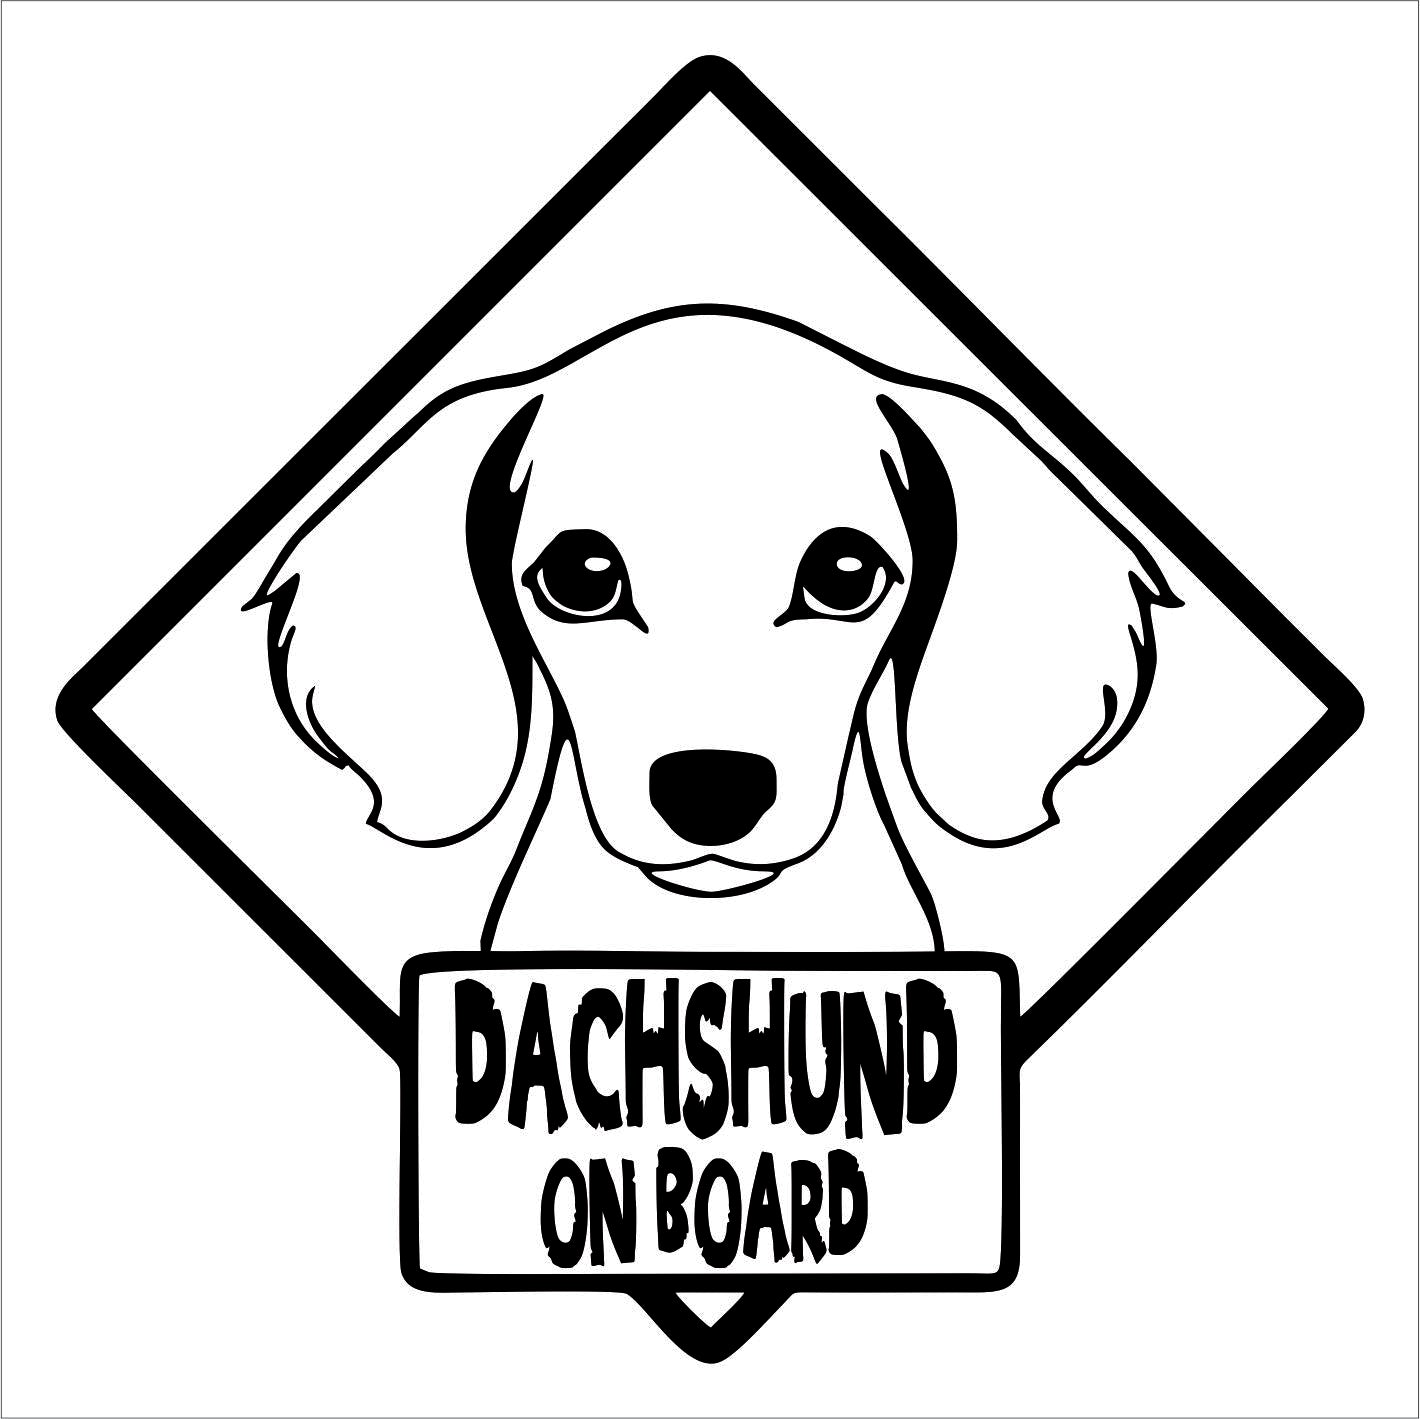 Dachshund on board Decal Sticker